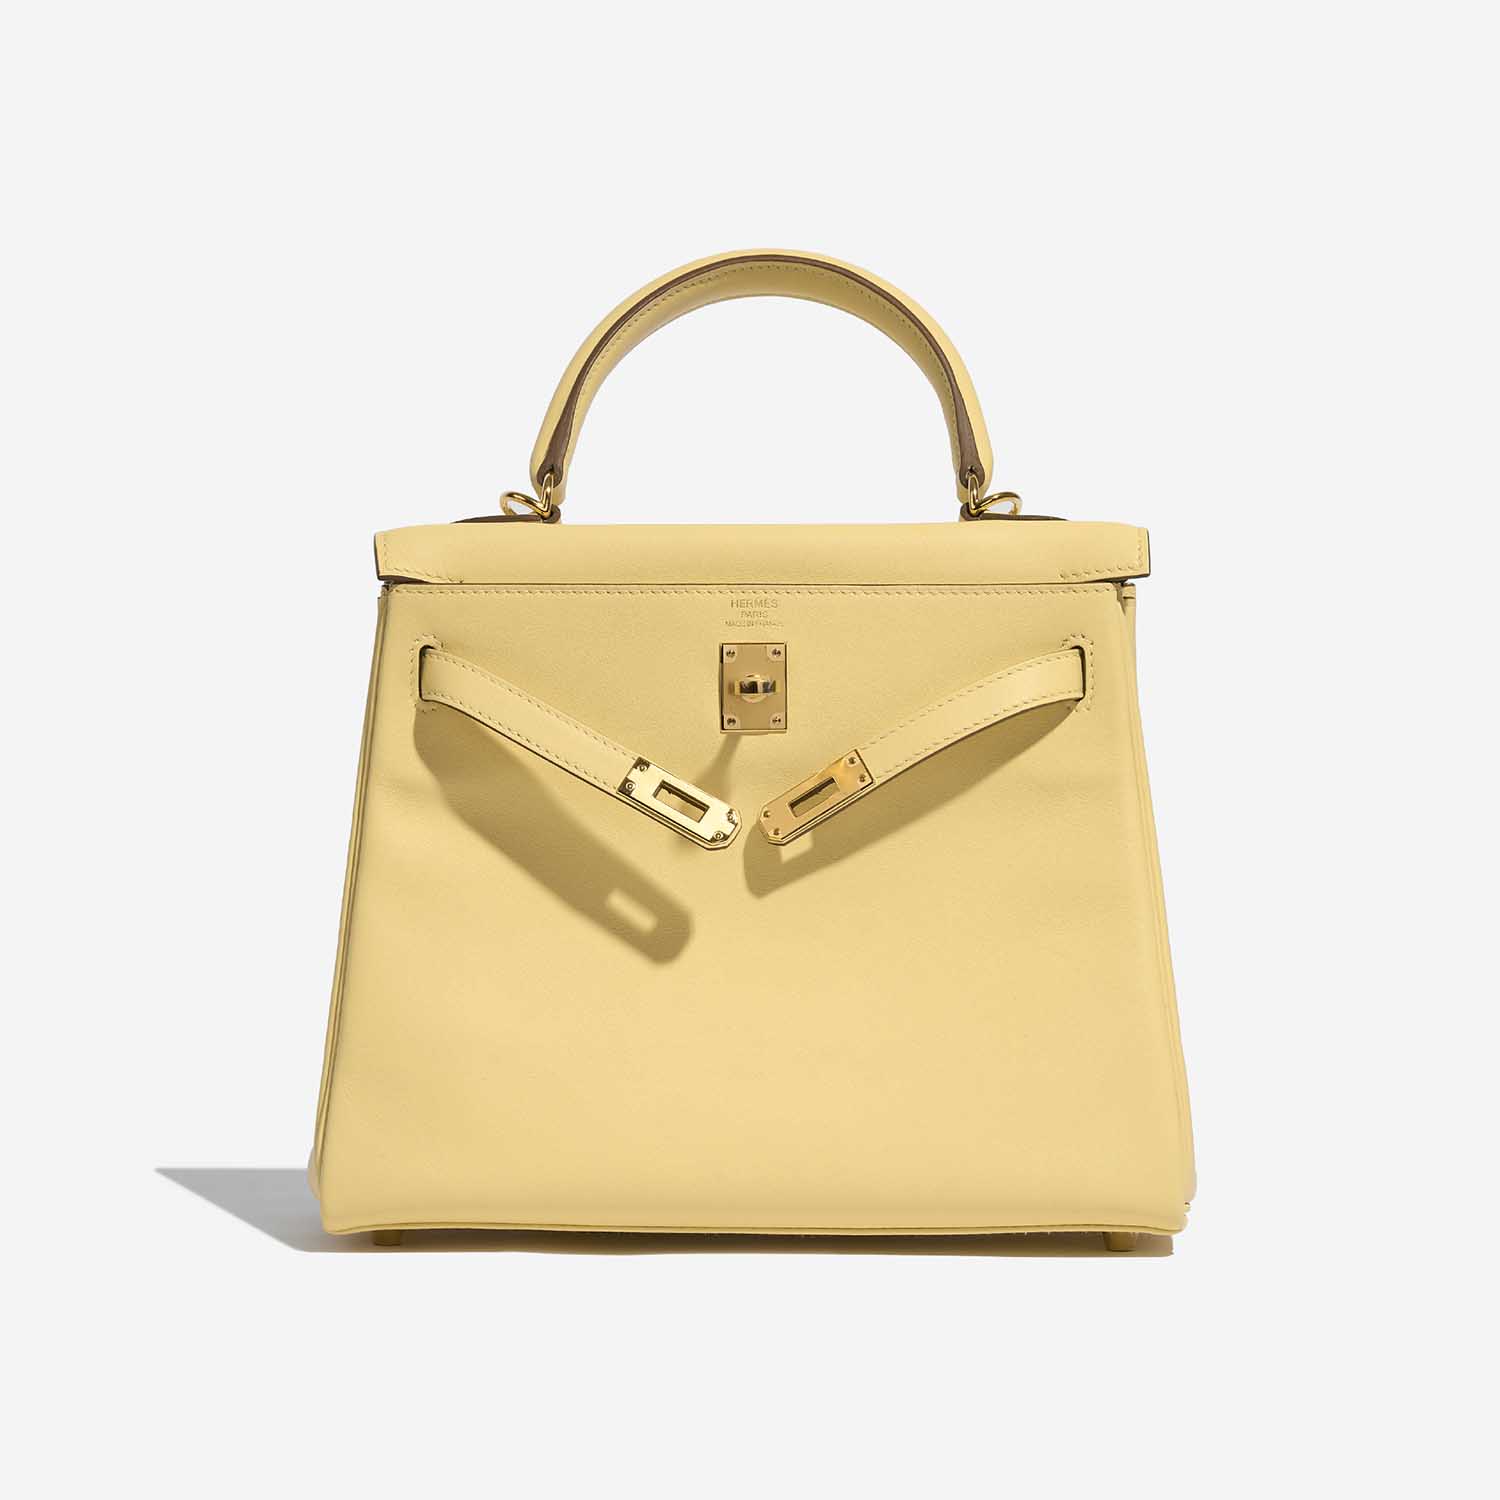 Pre-owned Hermès Tasche Kelly 25 Swift Jaune Poussin Gelb Front Open | Verkaufen Sie Ihre Designer-Tasche auf Saclab.com